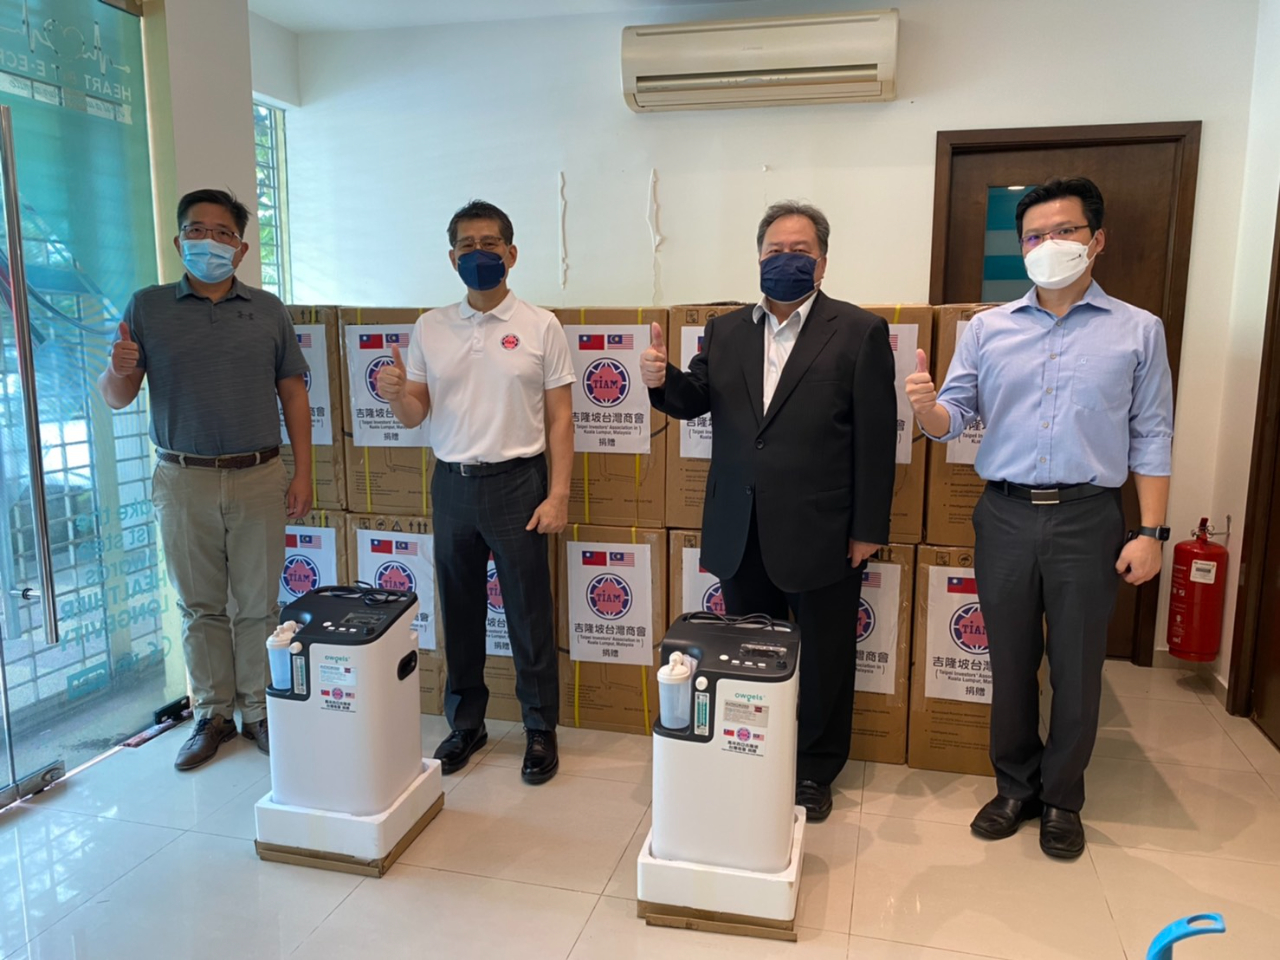 僑務組林渭德組長（右2）參與吉隆坡臺灣商會製氧機驗收